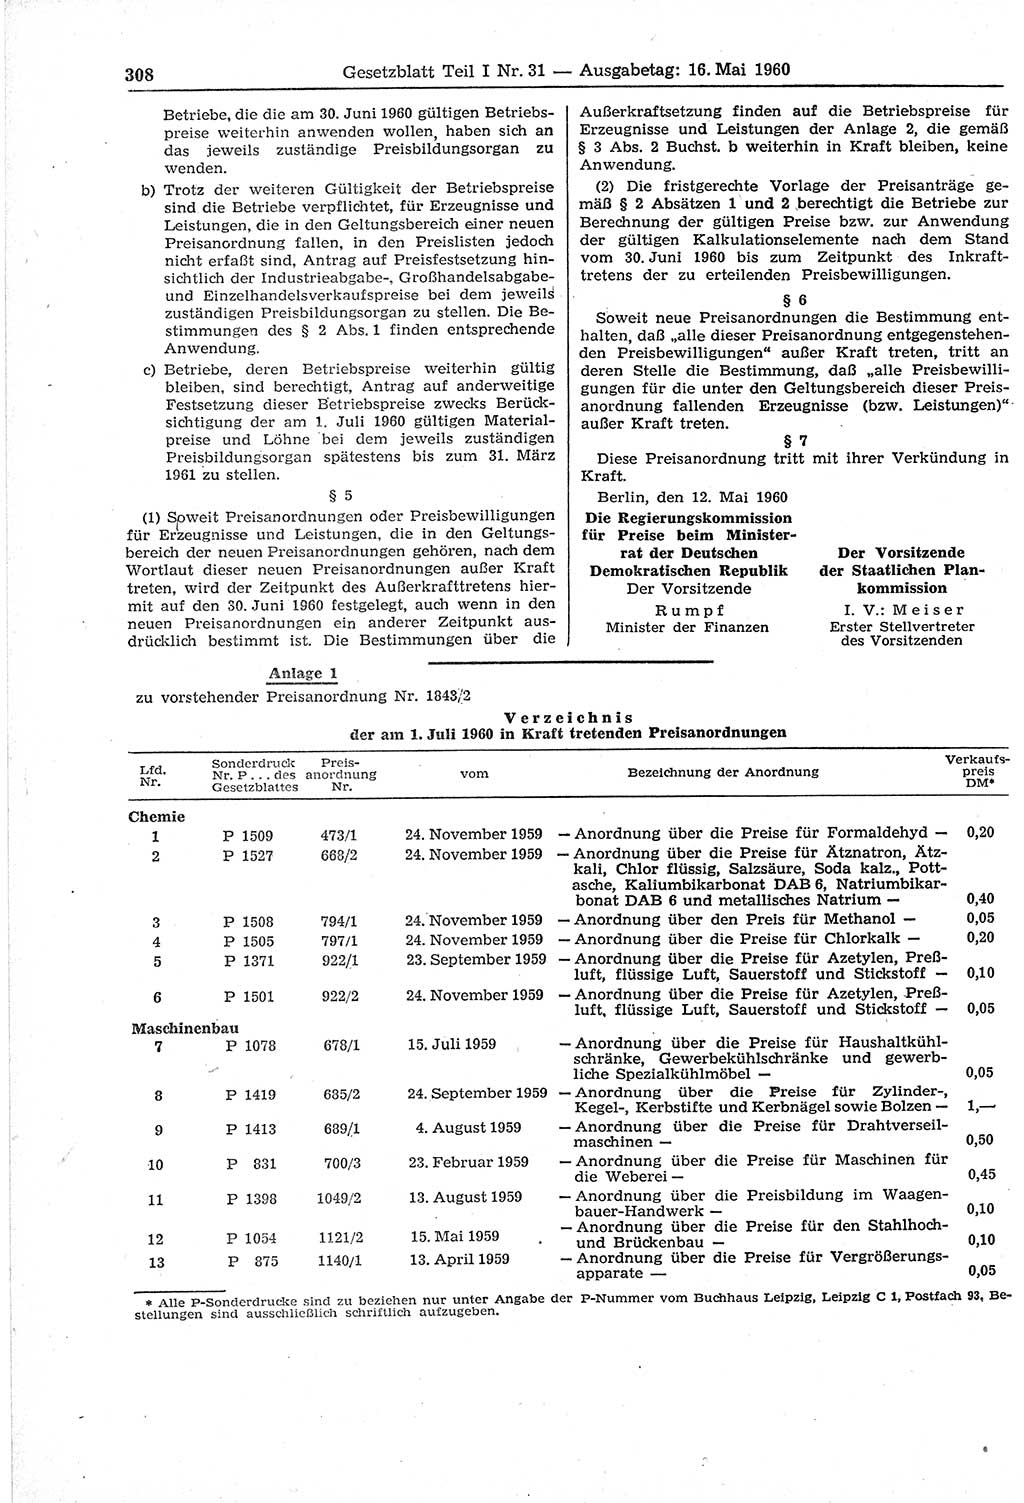 Gesetzblatt (GBl.) der Deutschen Demokratischen Republik (DDR) Teil Ⅰ 1960, Seite 308 (GBl. DDR Ⅰ 1960, S. 308)